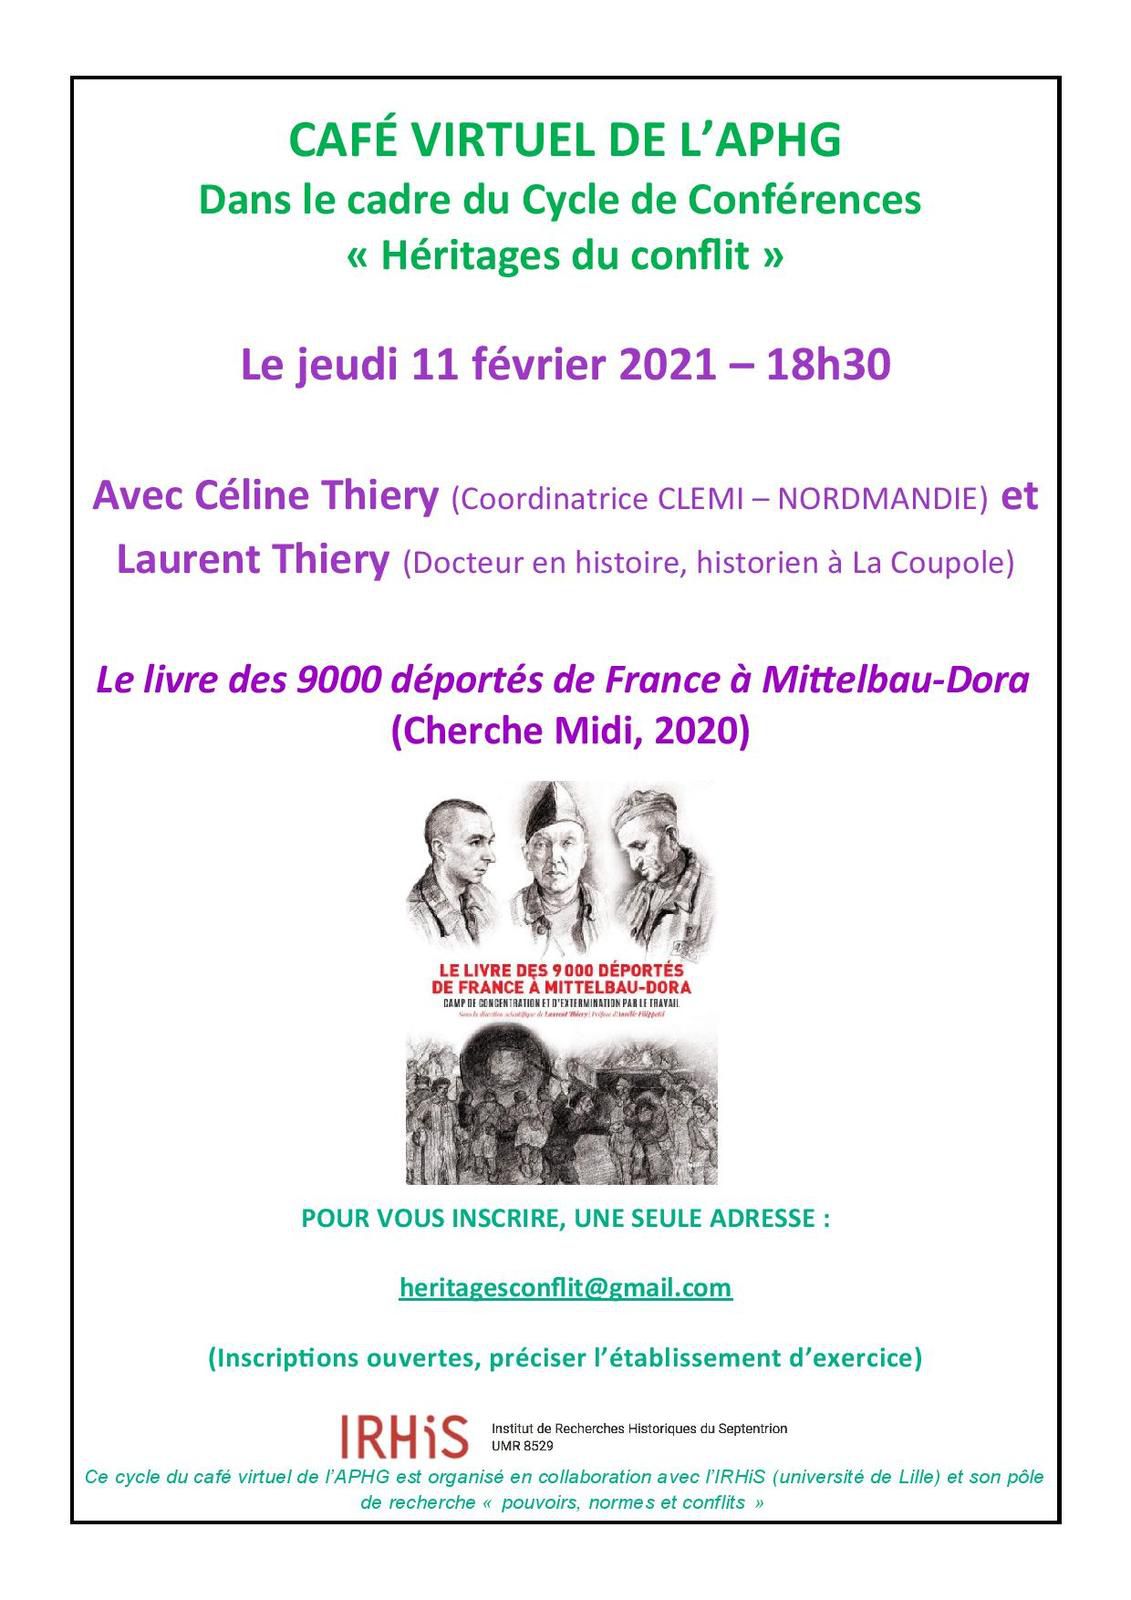 Cycle héritage du conflit : un café virtuel avec Céline Thiéry et Laurent Thiéry le 11 février 2021 autour du livre des 9 000 déportés de France à Mittelbau-Dora